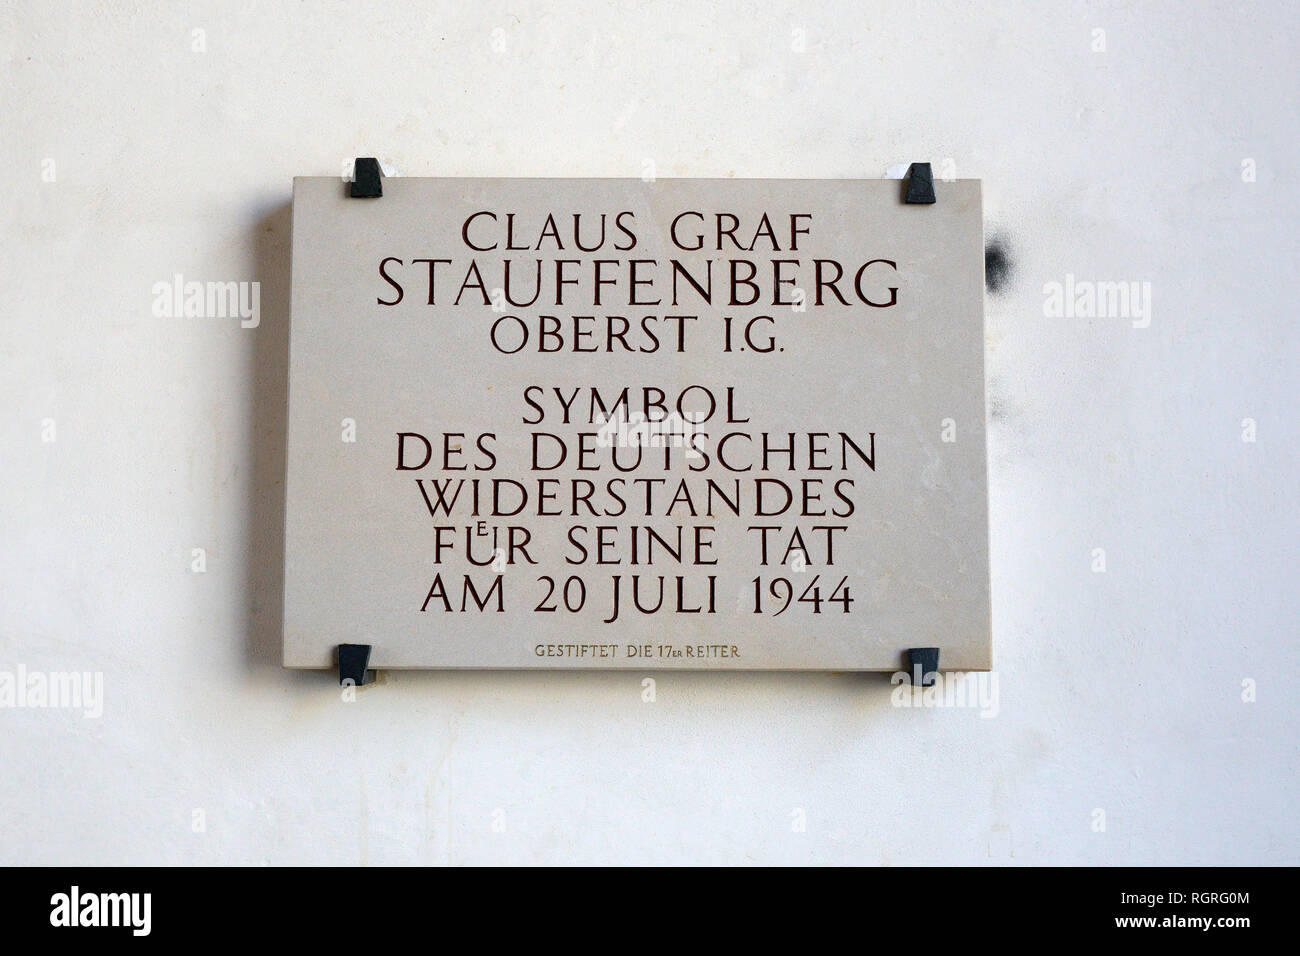 Gedenktafel fuer Claus Graf Stauffenberg, Am Alten Rathaus, Bamberg, Oberfranken, Franken, Bayern, Deutschland, Europa, Widerstand Foto Stock